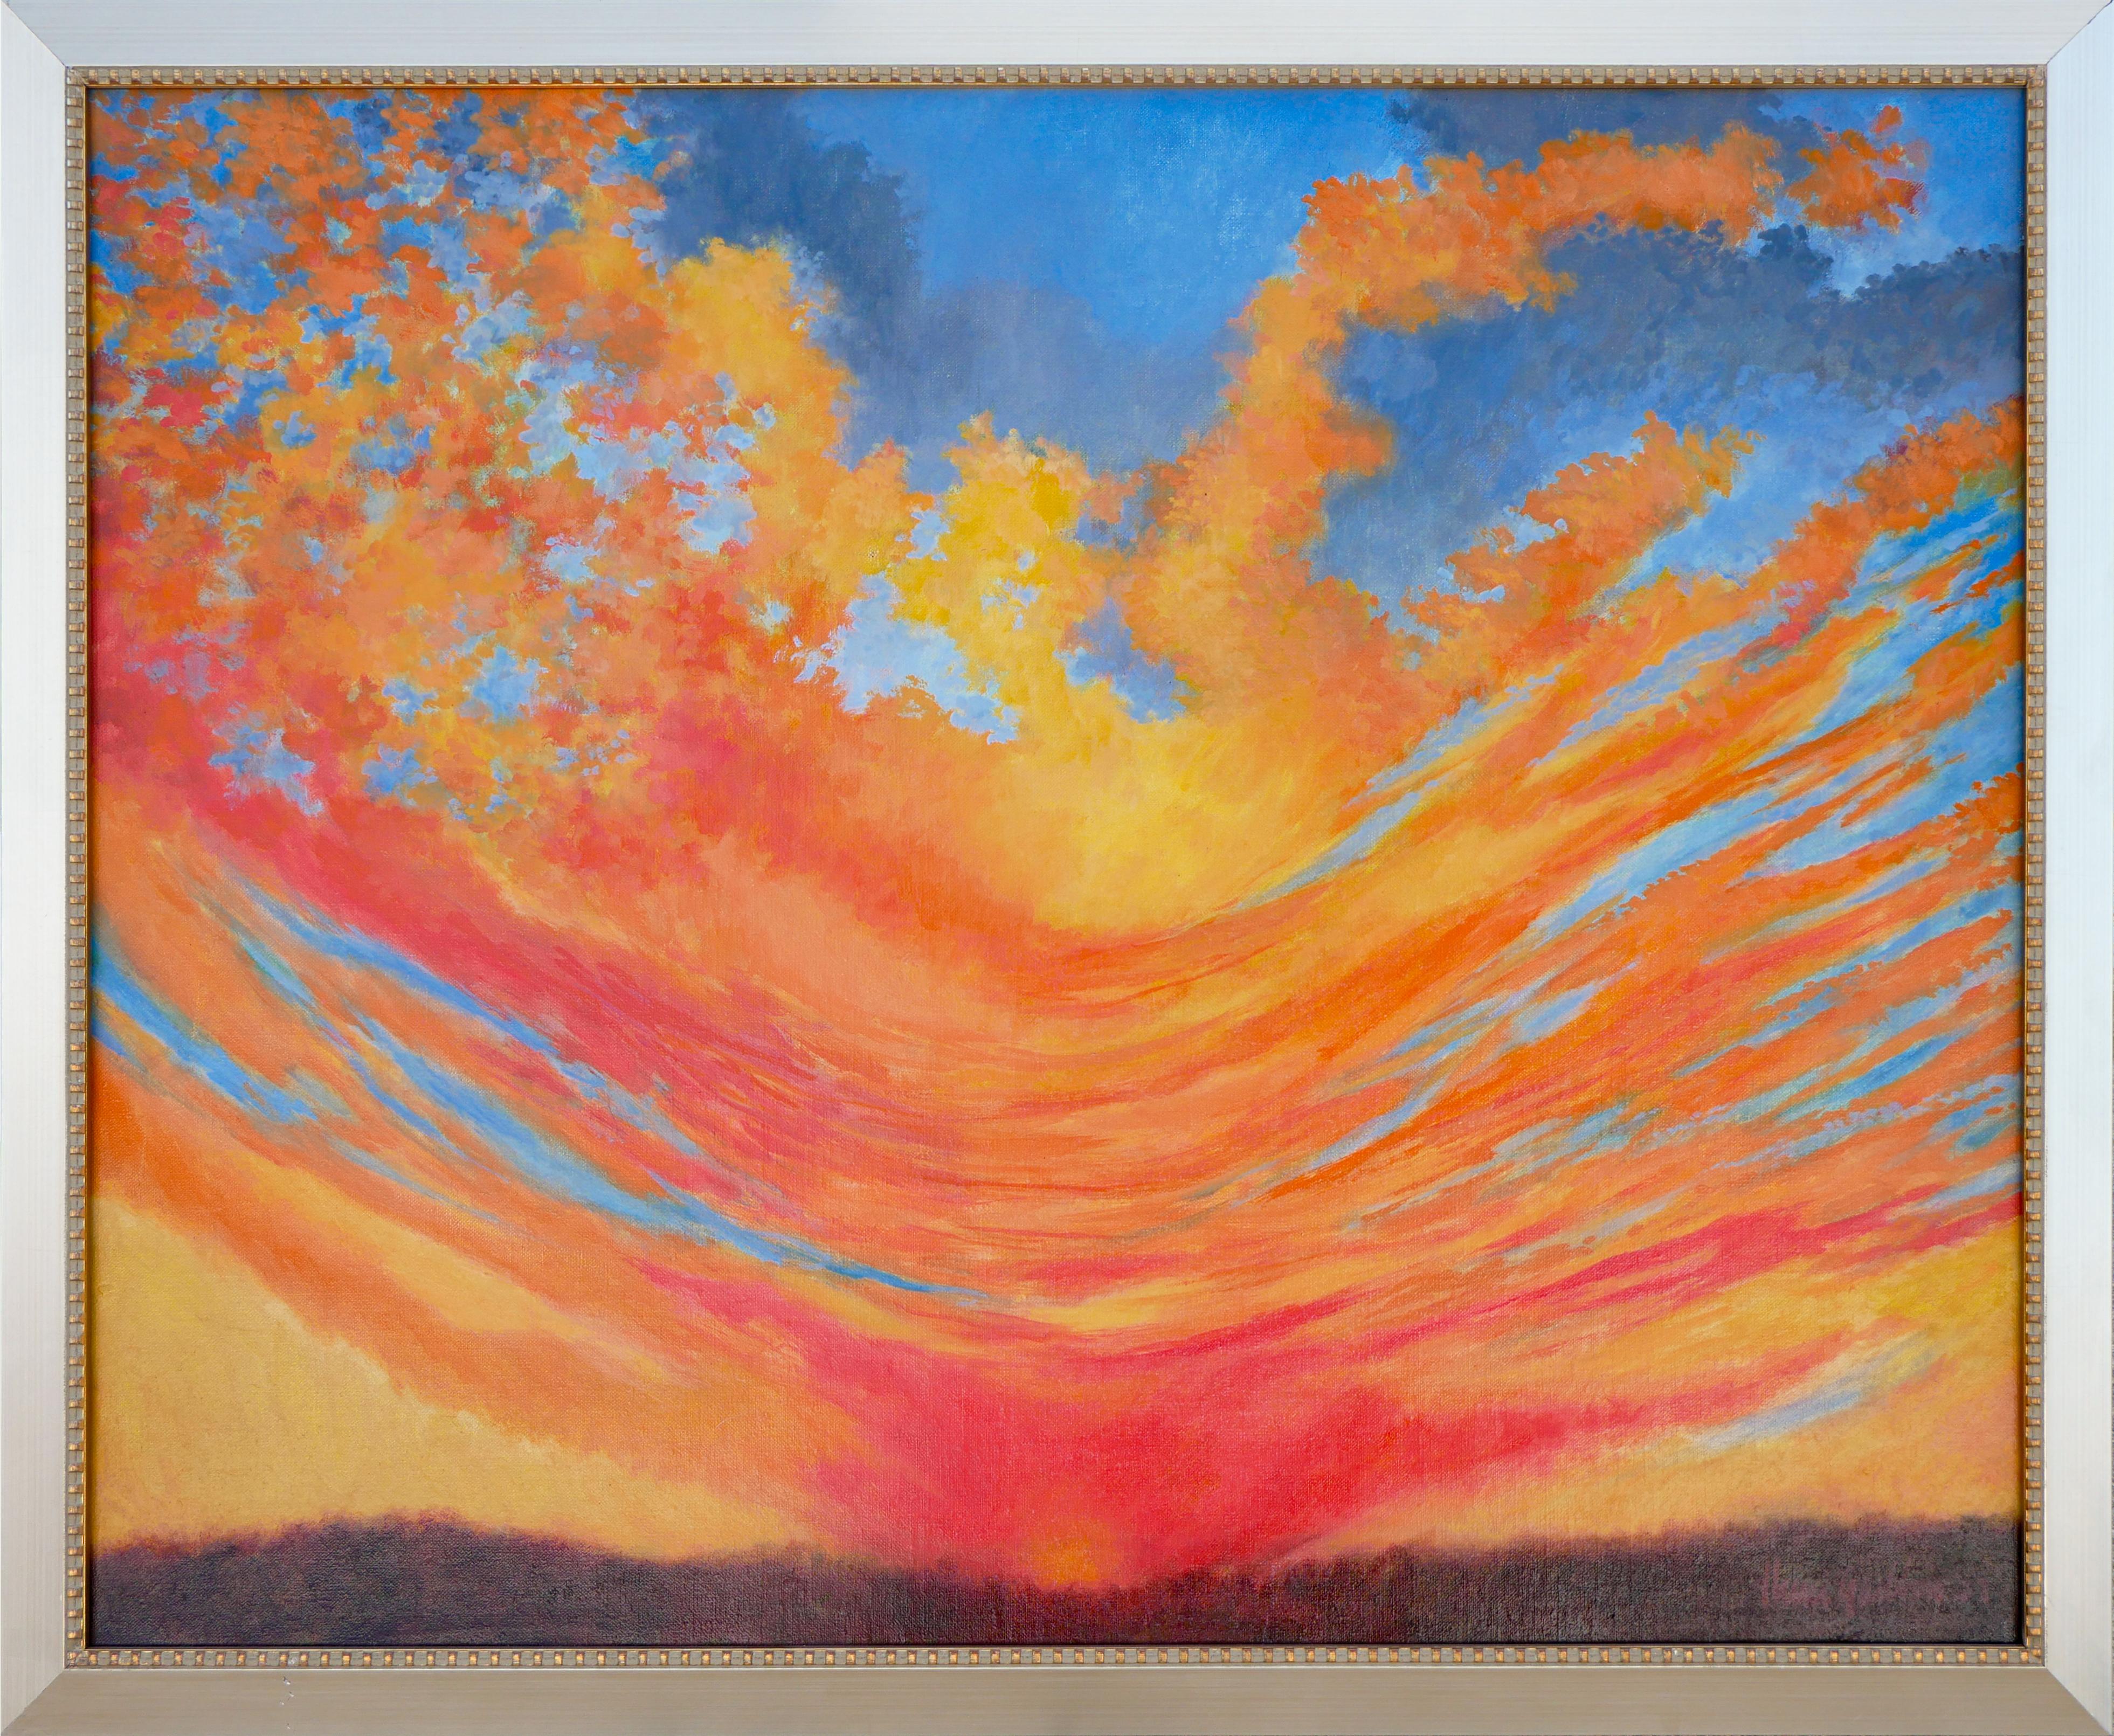 Henri Gadbois Abstract Print – Abstrakt-expressionistische Sonnenuntergang-Landschaft in Blau, Orange und Gelb